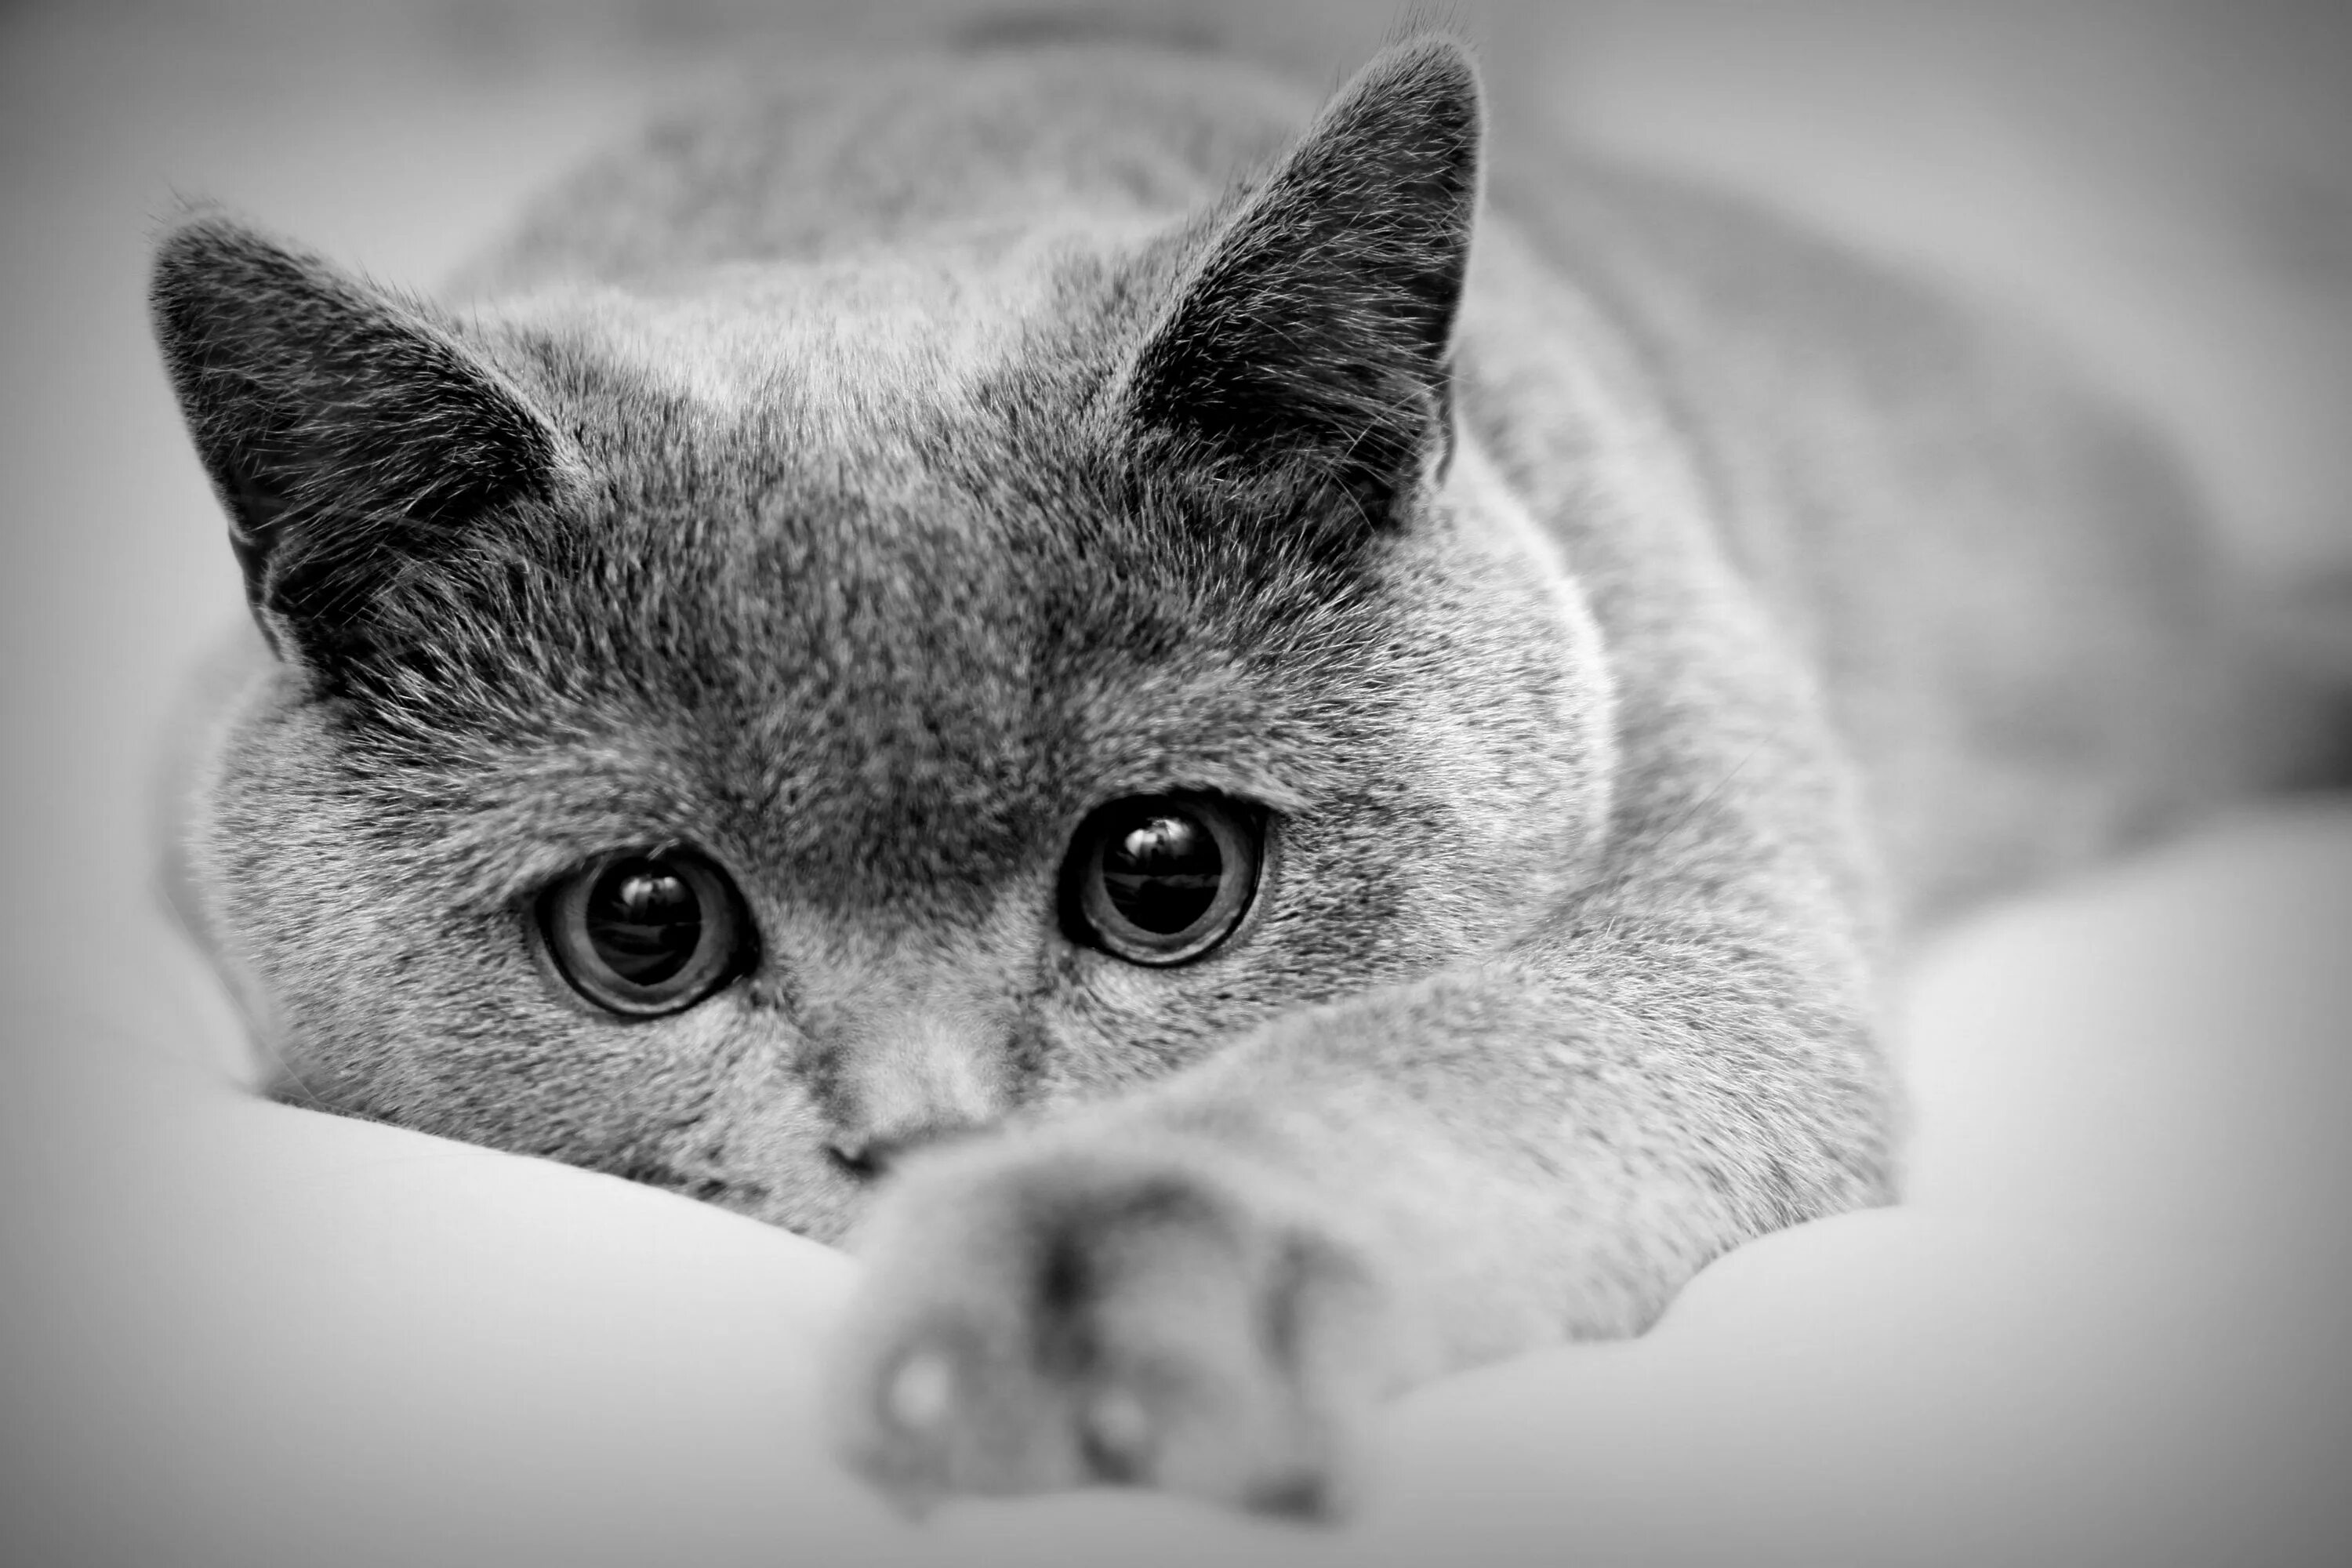 Красивые черно белые картинки. Красивая картинка чеонобел. Грустная кошка. Скучающий кот.